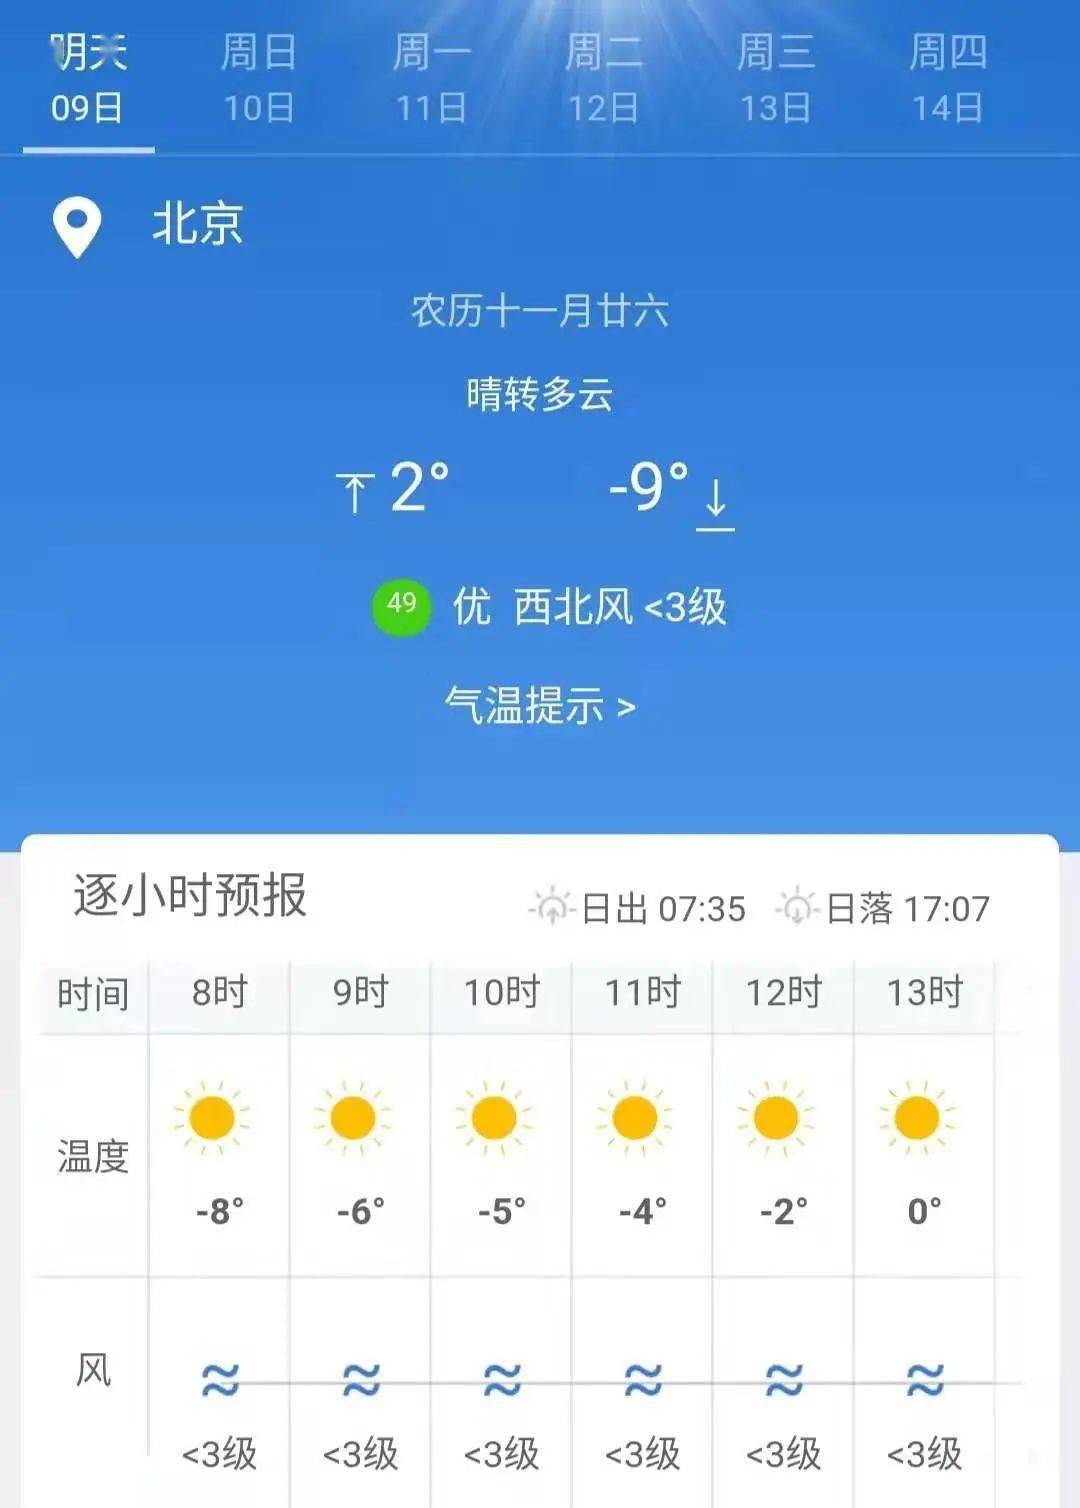 北京一周天气预报 今天 周五 周六 周日 周一 周二 周三 晴 晴 晴 阴